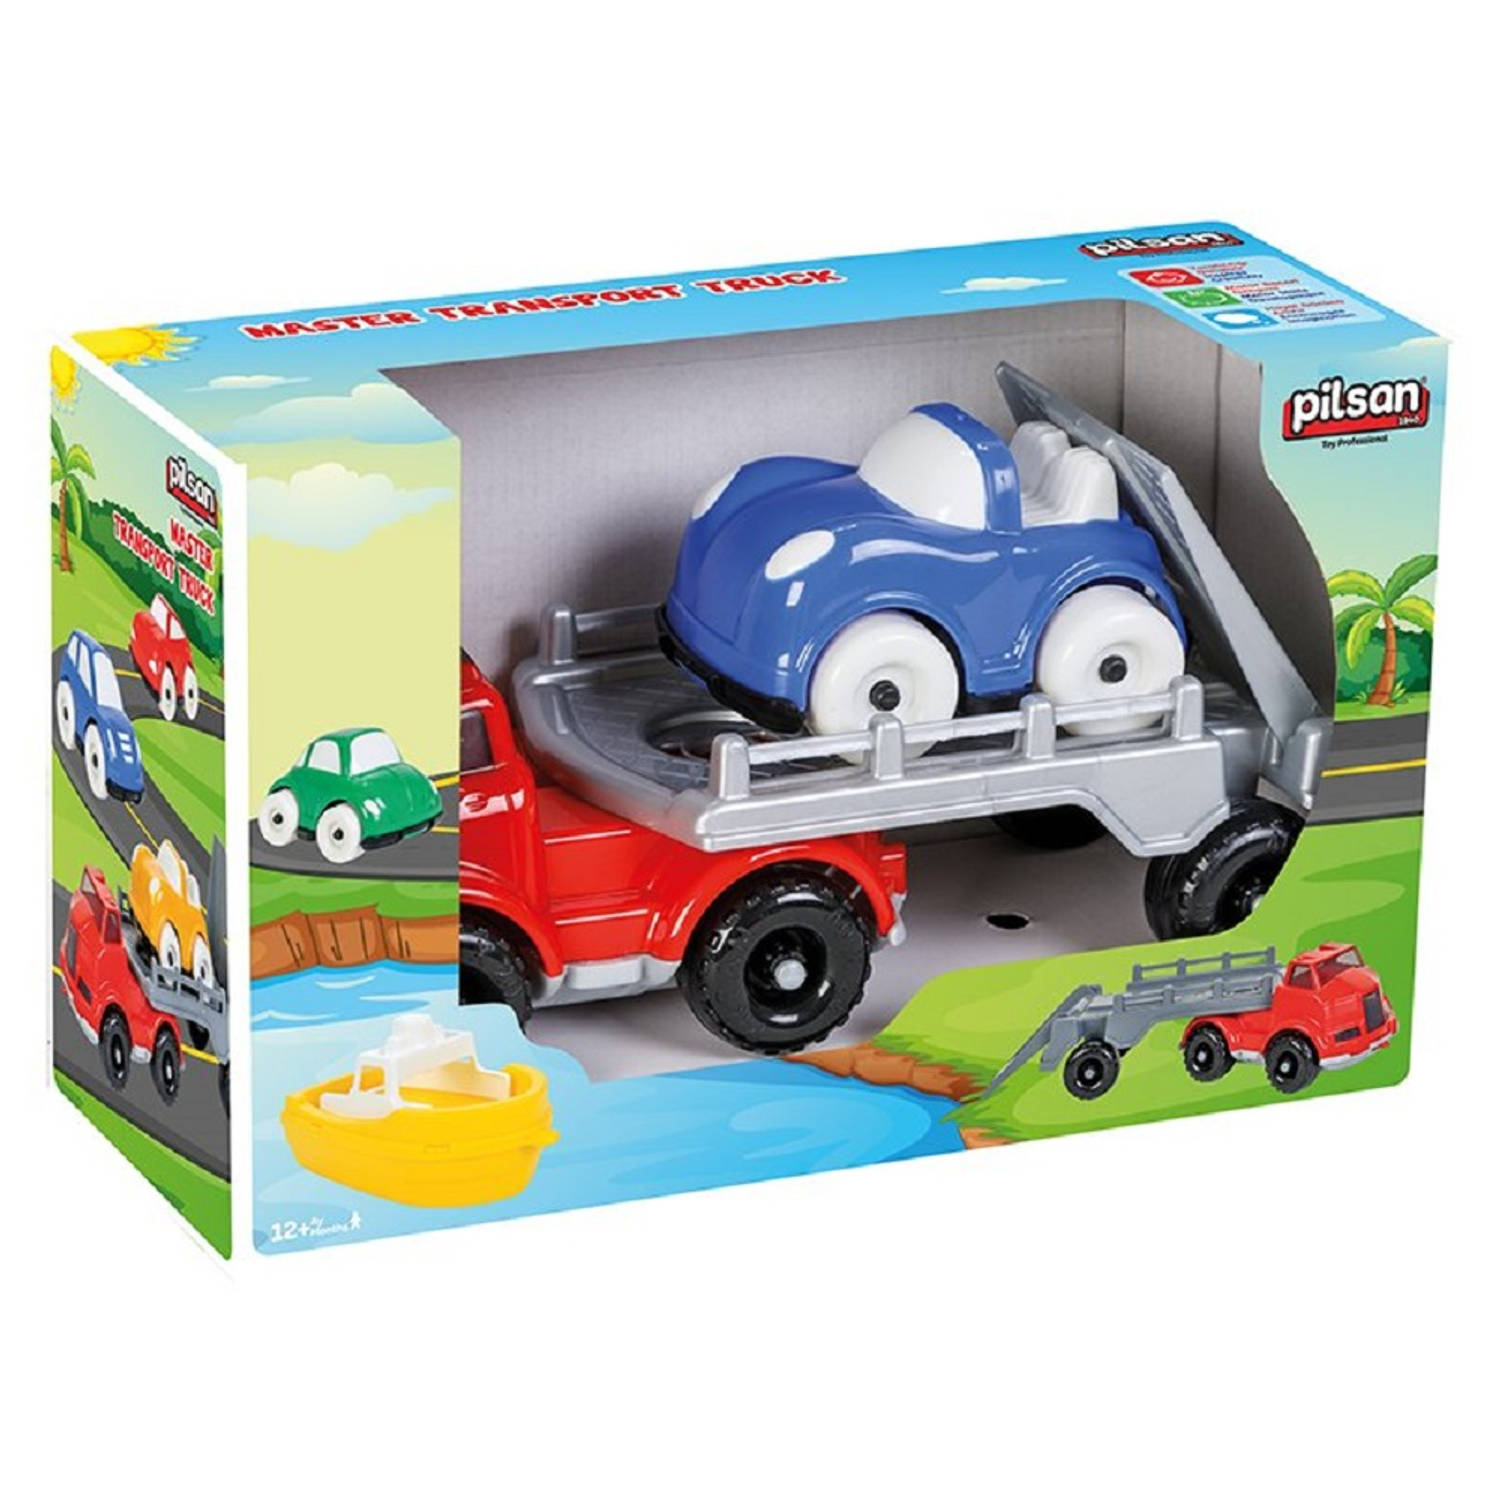 Pilsan - Takelwagen - Sleepwagen speelgoed voor kinderen - 2+ jaar - BPA vrij - Kleur: groen